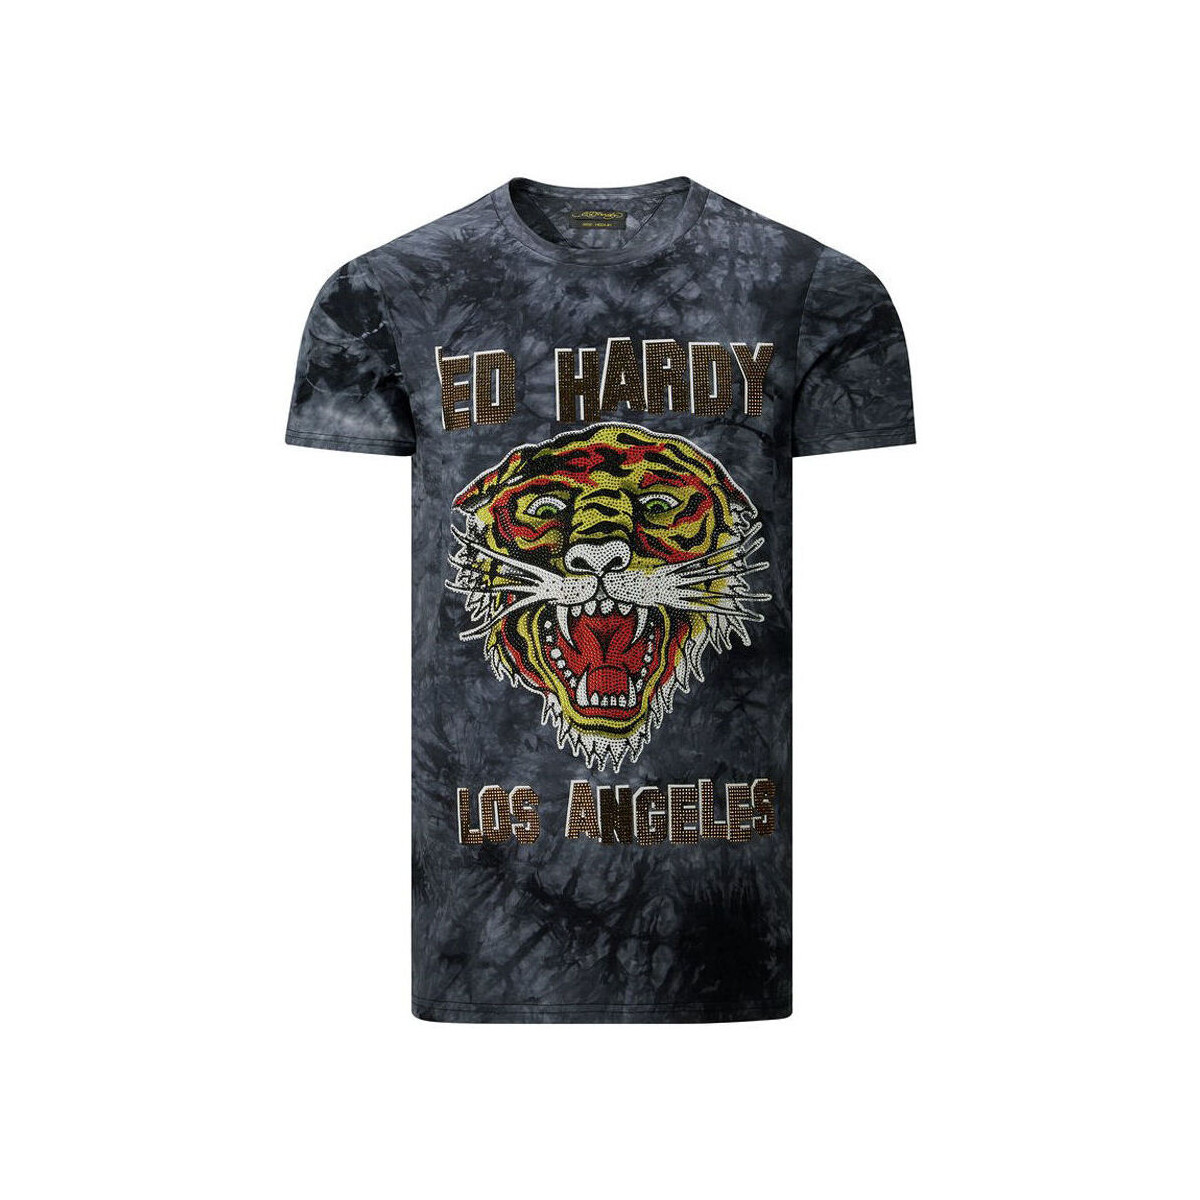 Textil Muži Trička s krátkým rukávem Ed Hardy Los tigre t-shirt black Černá